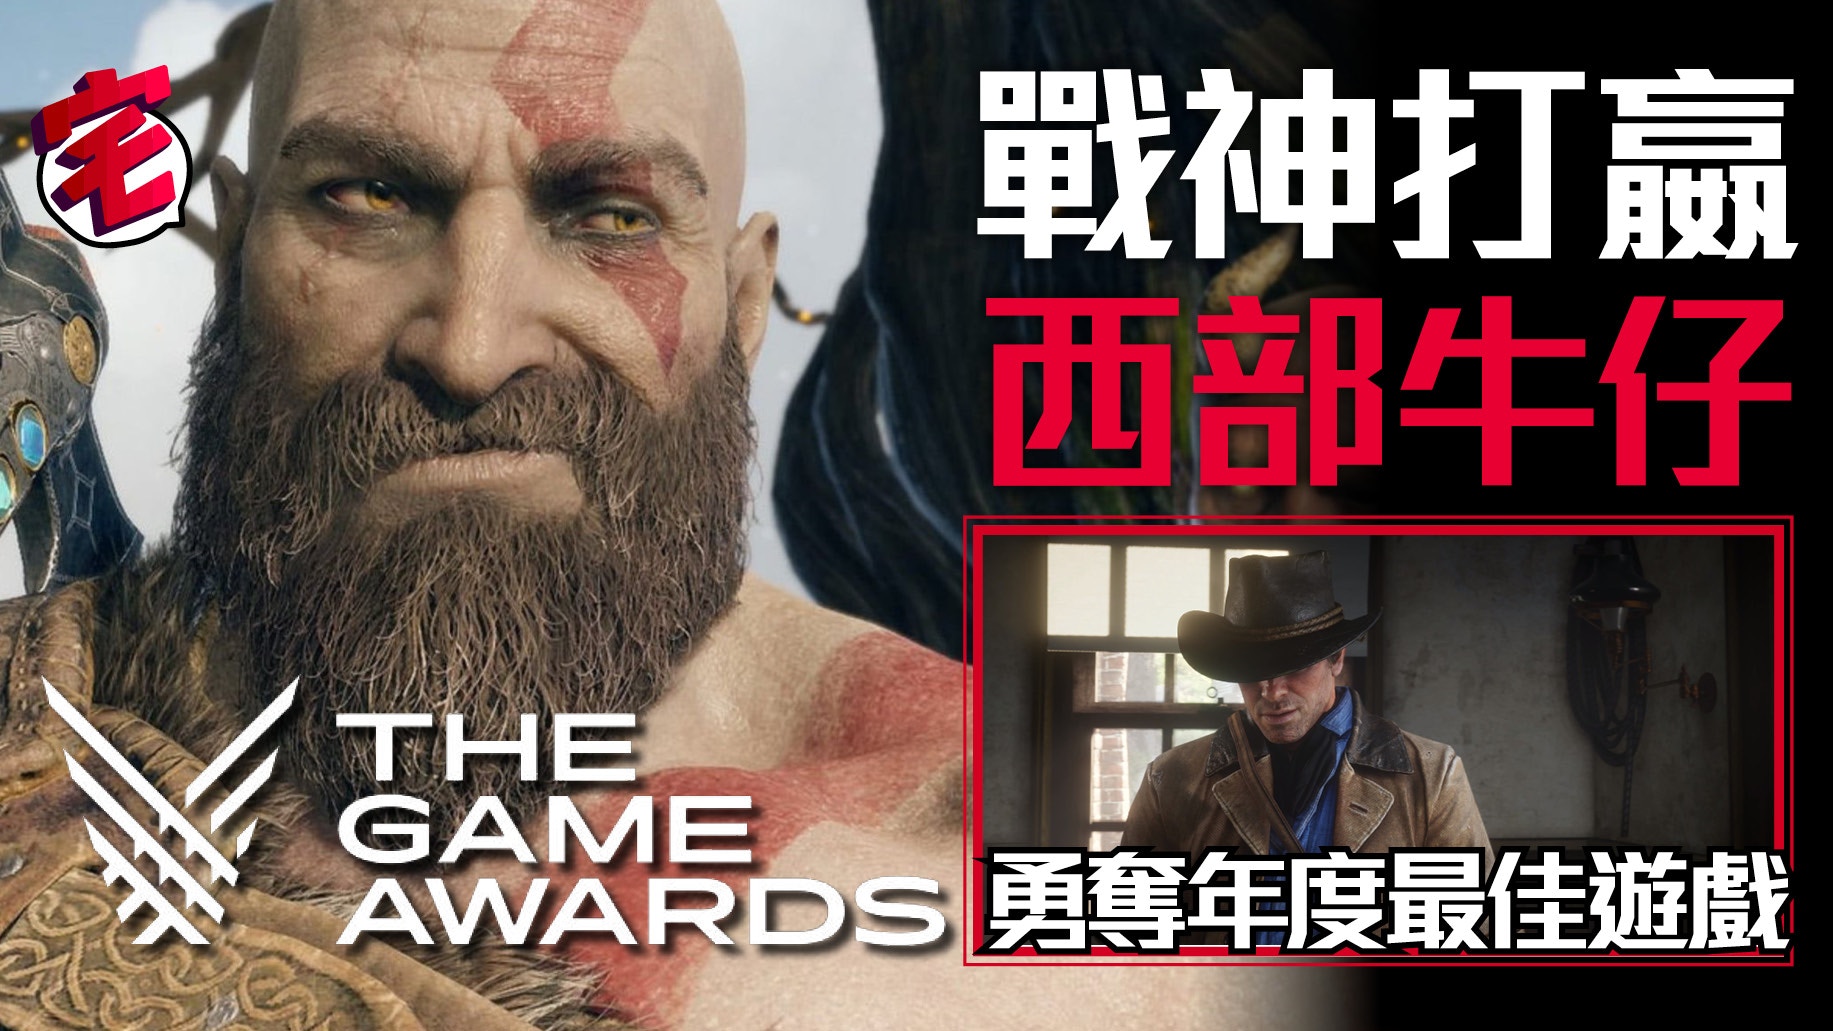 รวมผลรางวัลจากเวที The Game Awards 2018! God Of War คว้ารางวัลใหญ่ Game of  the Year - GG2